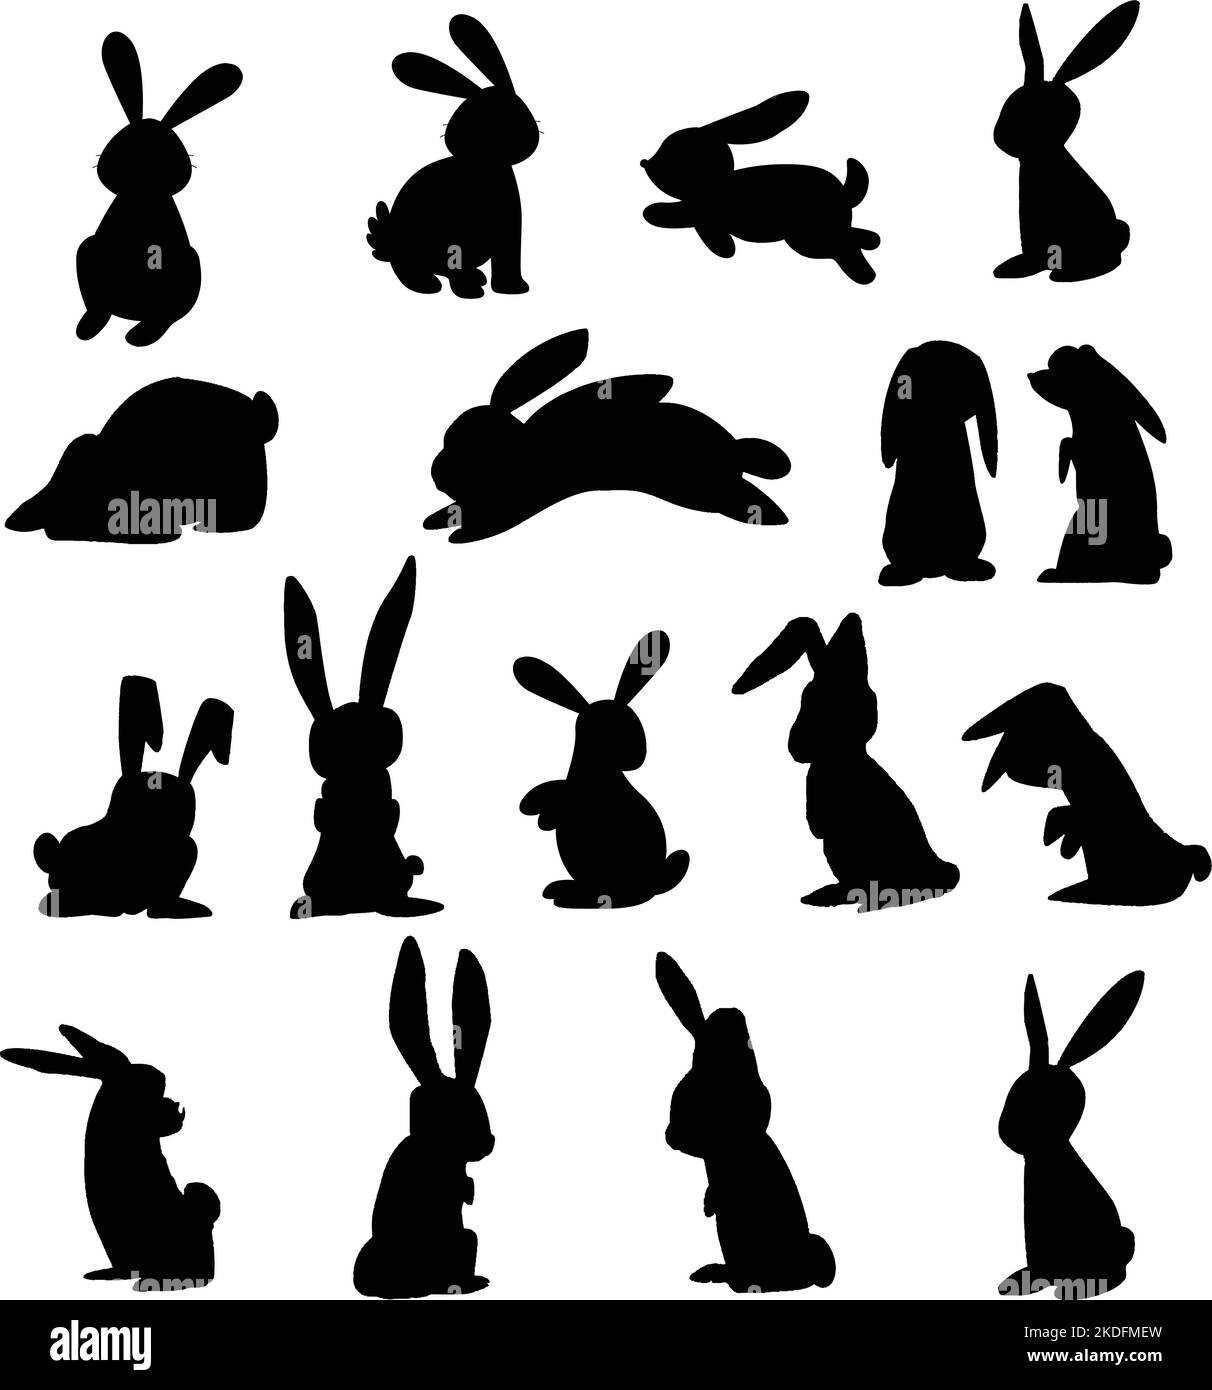 Le paquet d'autocollants noirs de silhouettes de lapins sur fond blanc Illustration de Vecteur